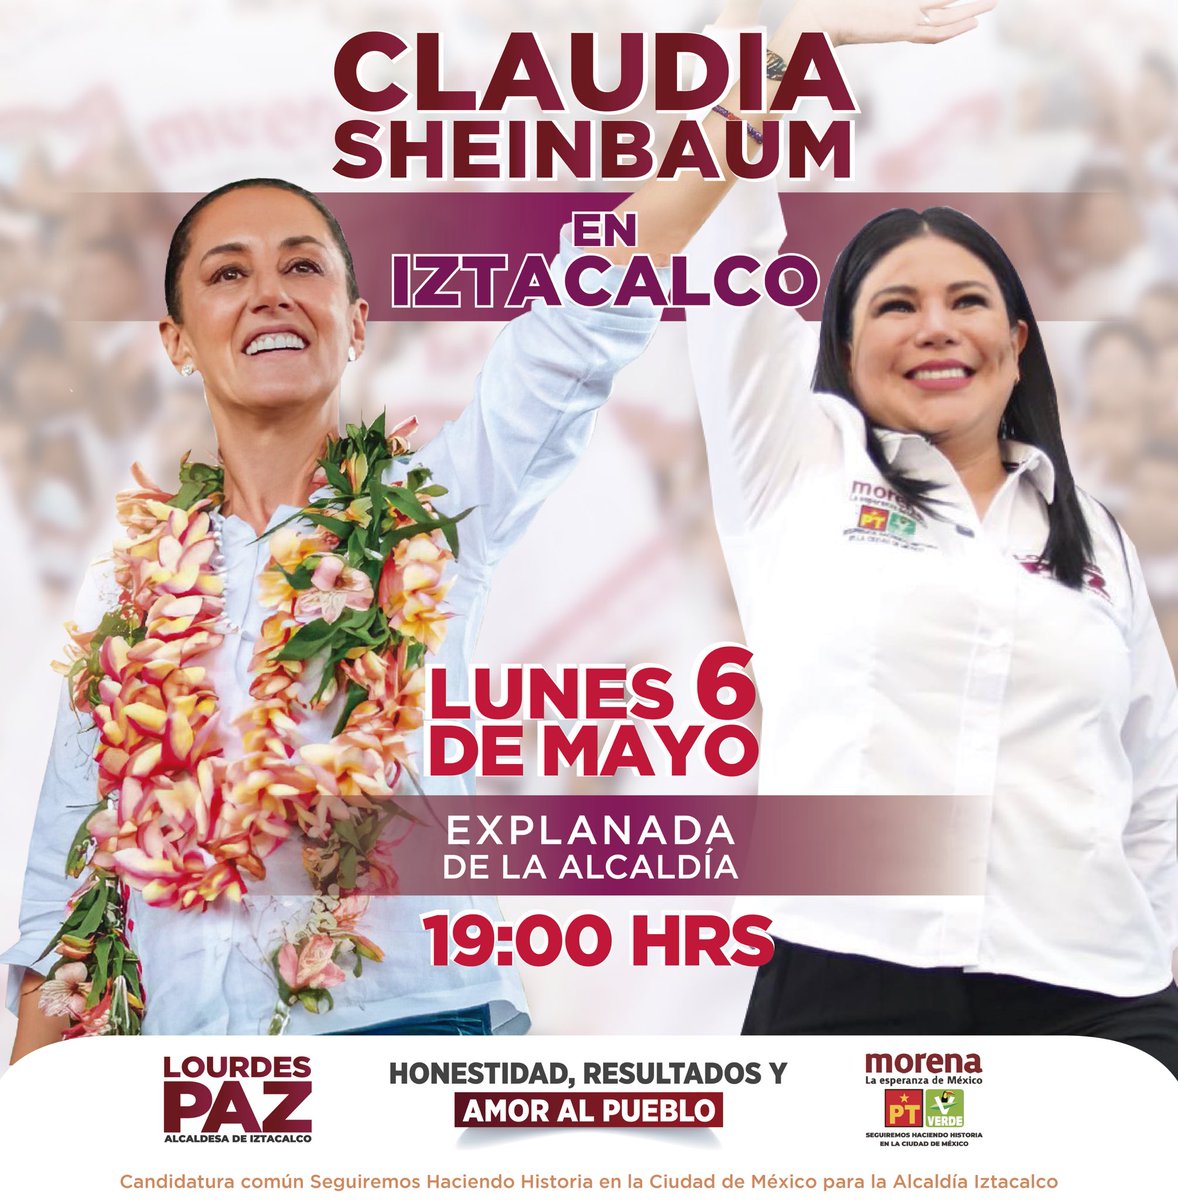 ¡La Dra. @Claudiashein viene a Iztacalco!
Nuestra alcaldía la espera con los brazos abiertos. 🫶

#ClaudiaPresidenta
#LourdesPazAlcaldesa
#SegundoPisoDeLa4T